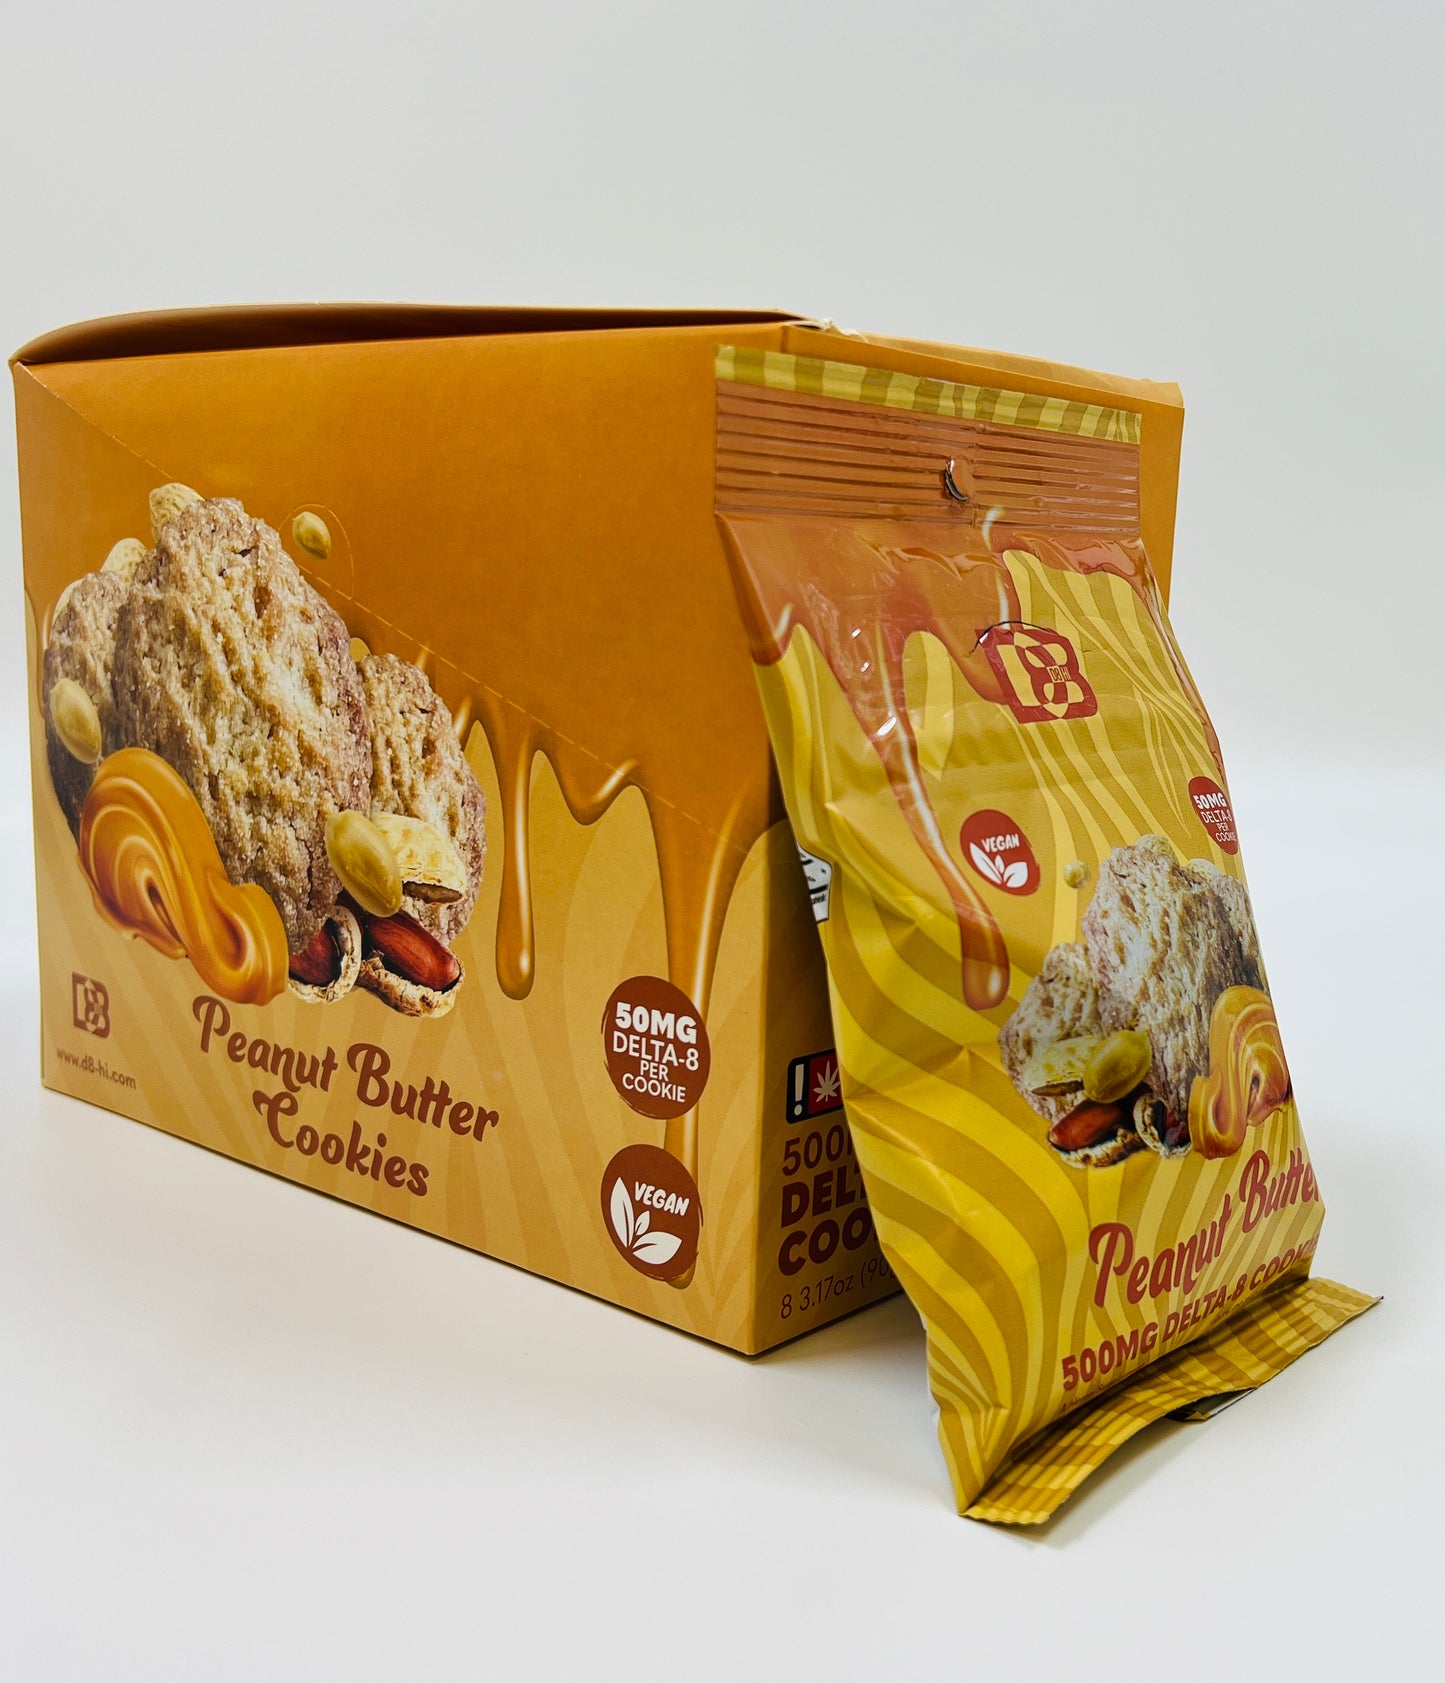 D8-Hi Delta 8 Cookies - 500MG Per Bag - *8 Bags Per Display* NEW - Assorted Flavors *NEW*